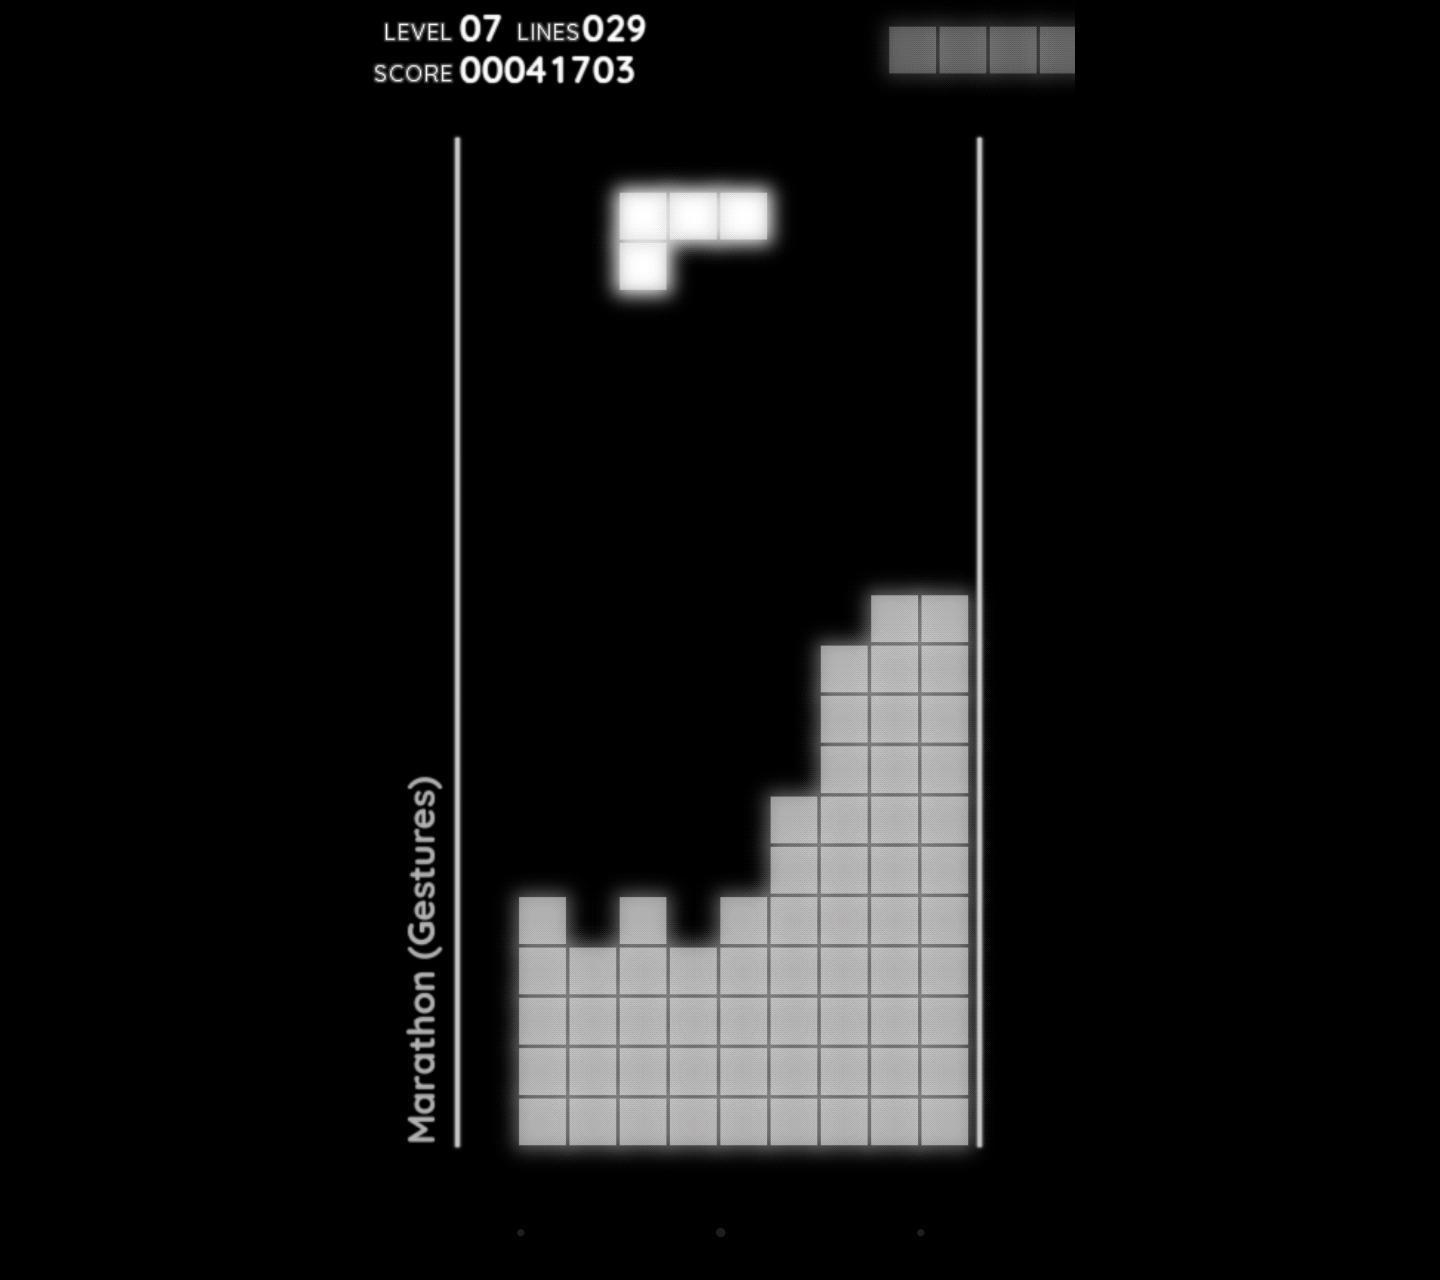 Тетрис с уровнями сложности. Tetris первый релиз. Тетрис классический СССР. Tetris Falling Blocks Денди. Тетрис все будет